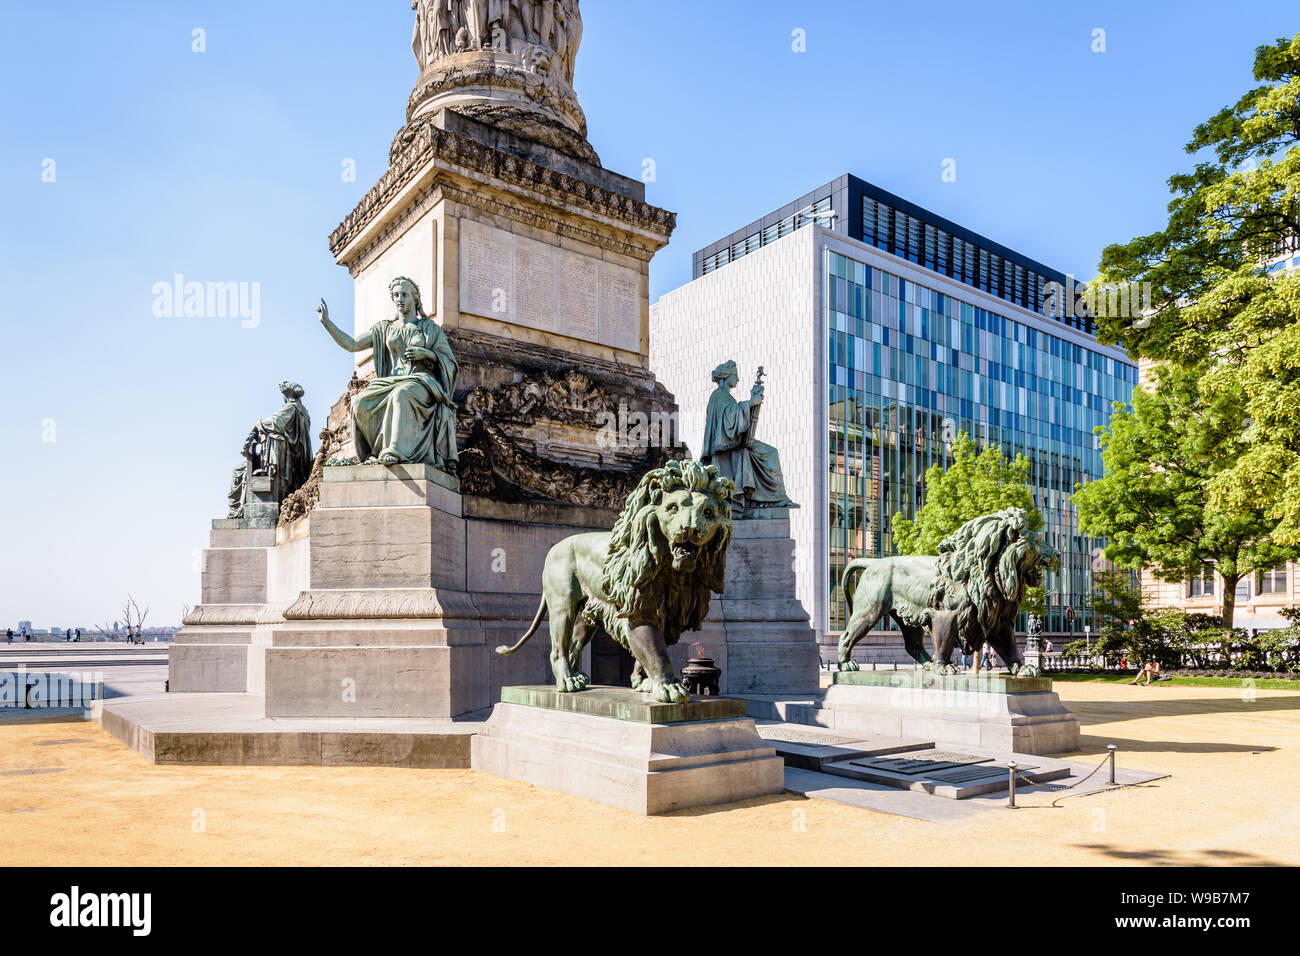 Le piédestal de la colonne du Congrès à Bruxelles, Belgique, la célébration de la Constitution belge et de la tombe du Soldat inconnu entre deux statues de lion. Banque D'Images